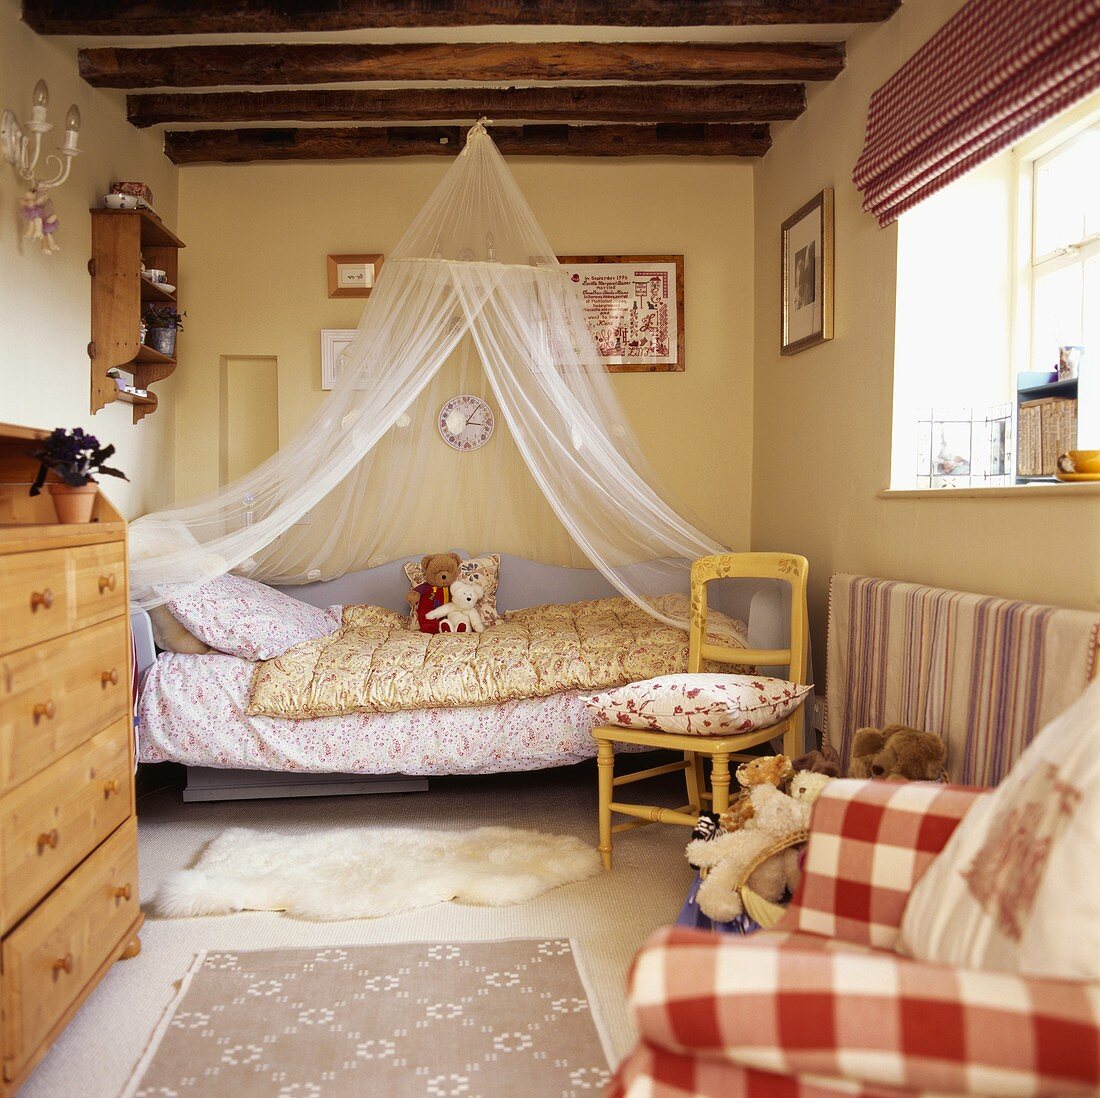 Moskitonetz über Bett mit dekorierten Teddys in Kinderzimmer mit Holzbalkendecke und rot-weiss-karierter Stoffjalousie